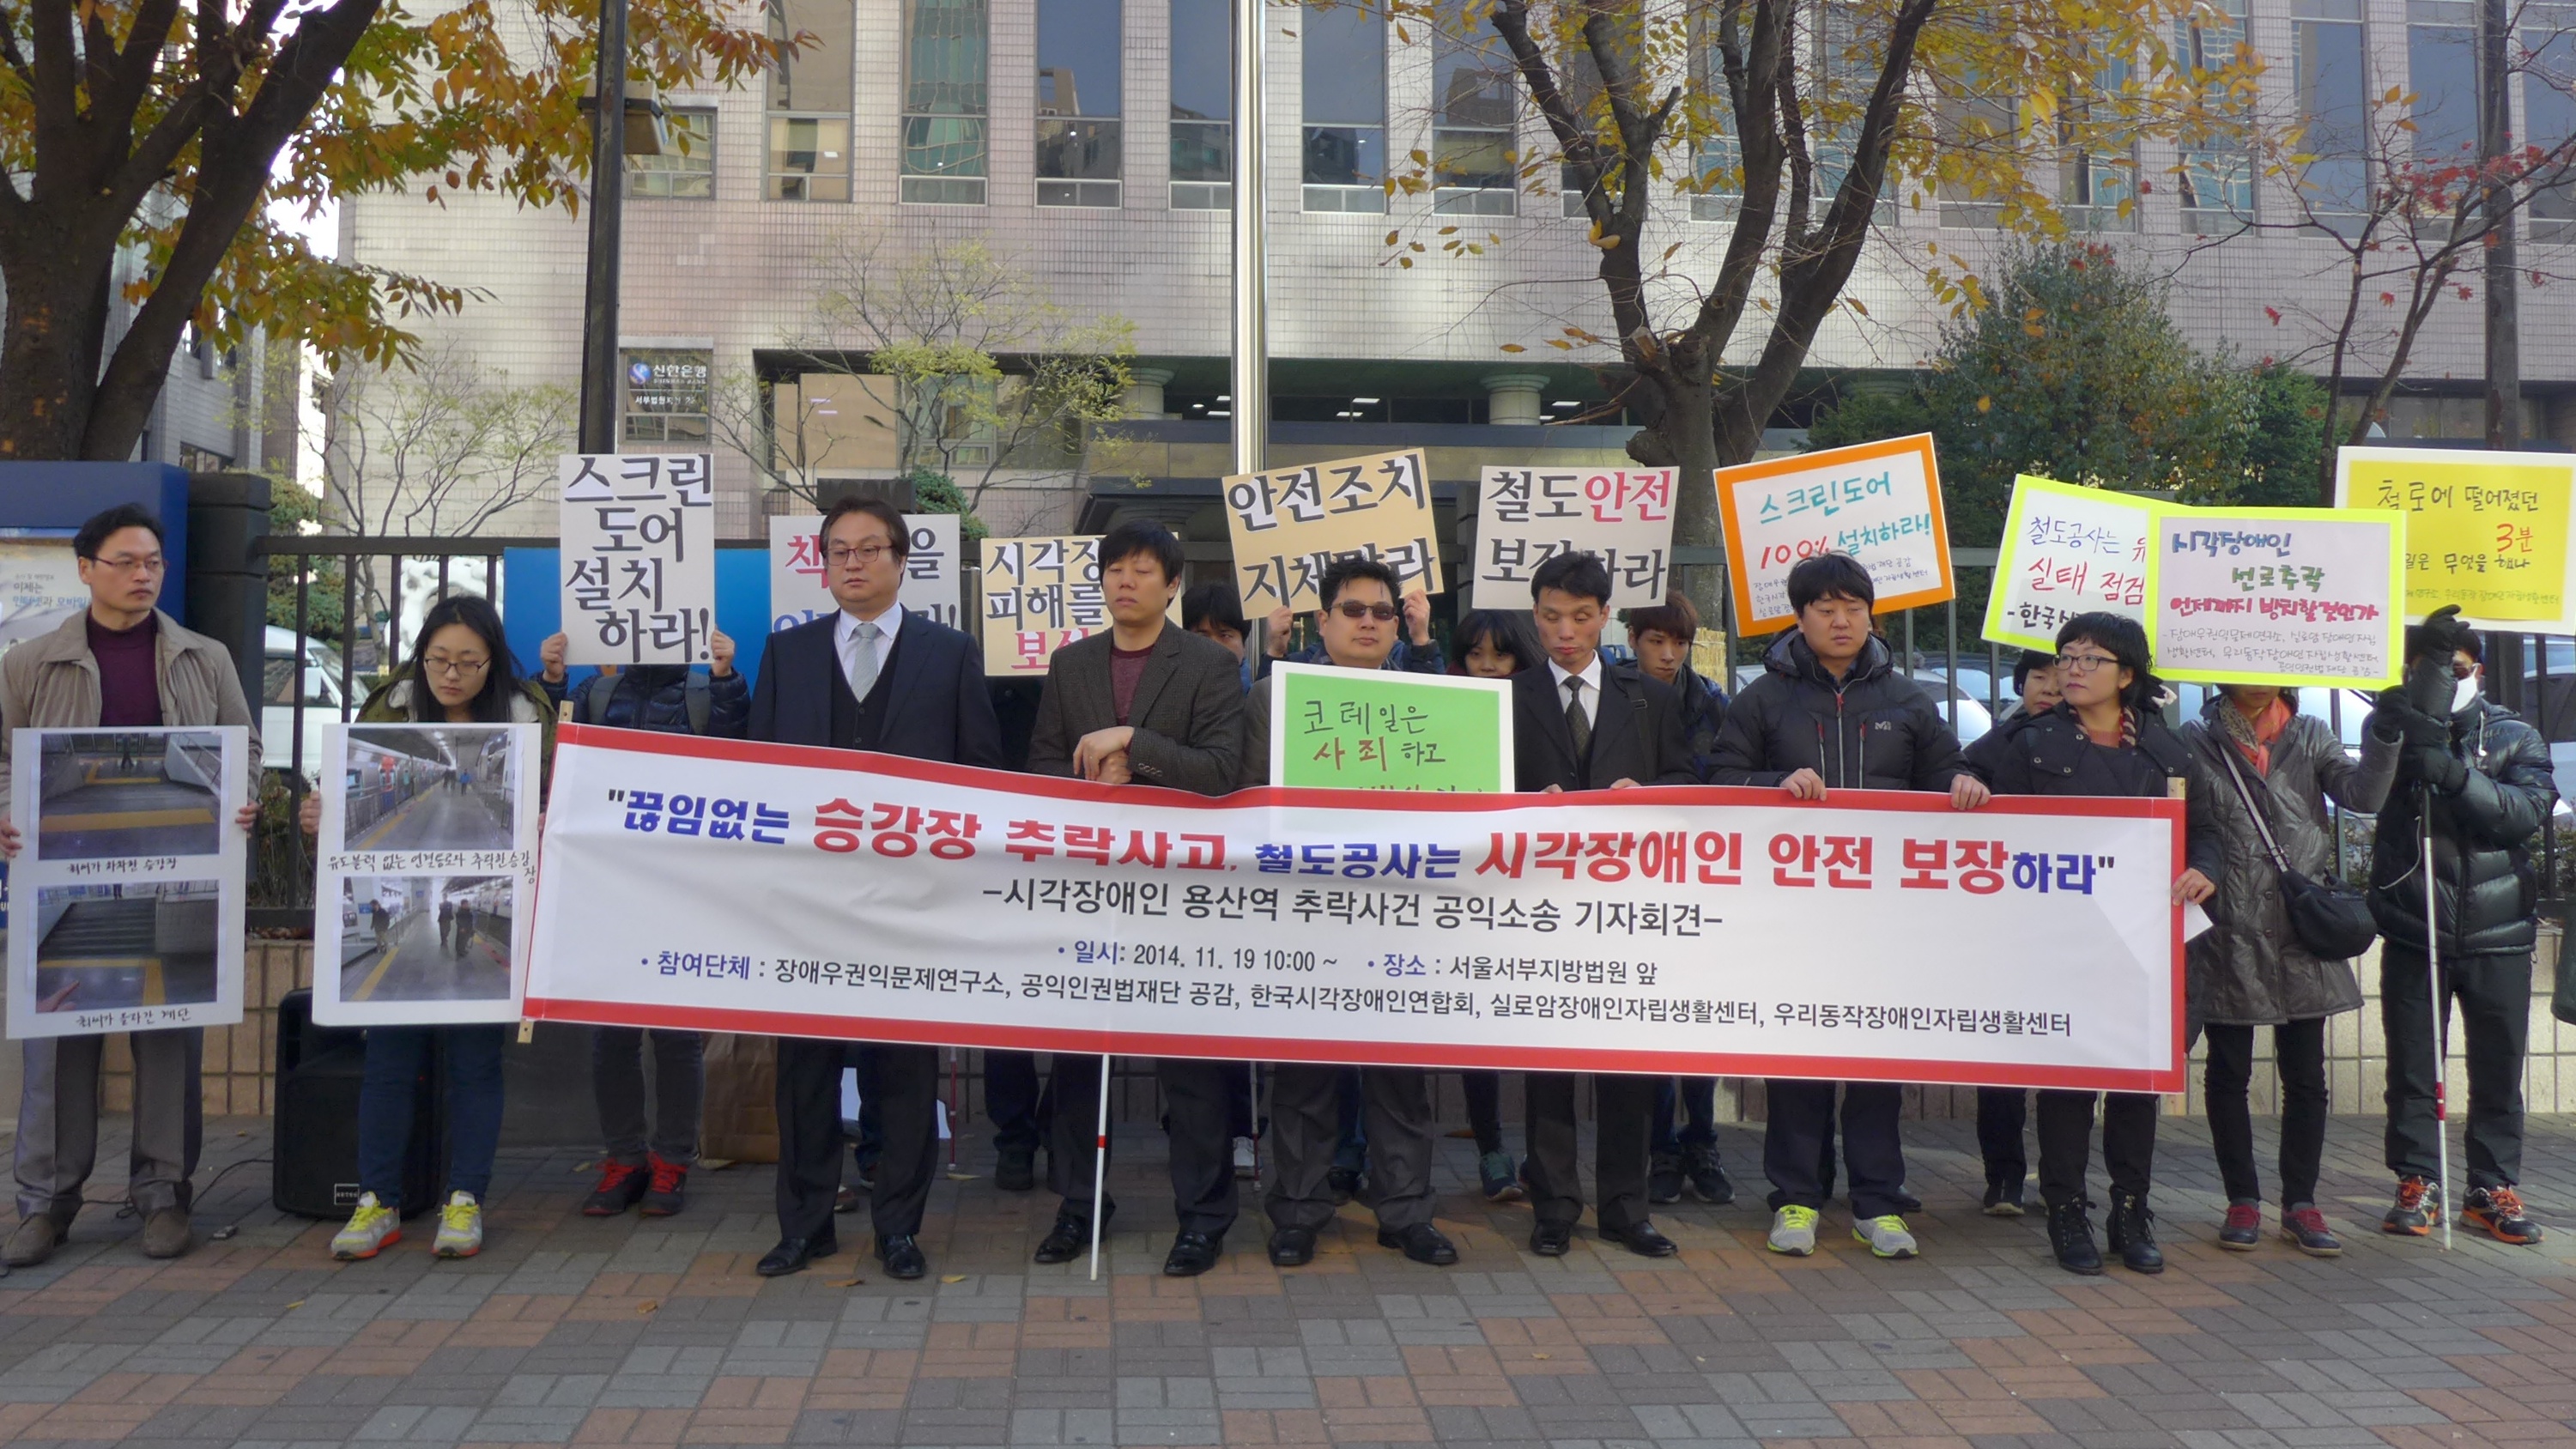 서울지방법원 앞에서 기자회견 중인 모습